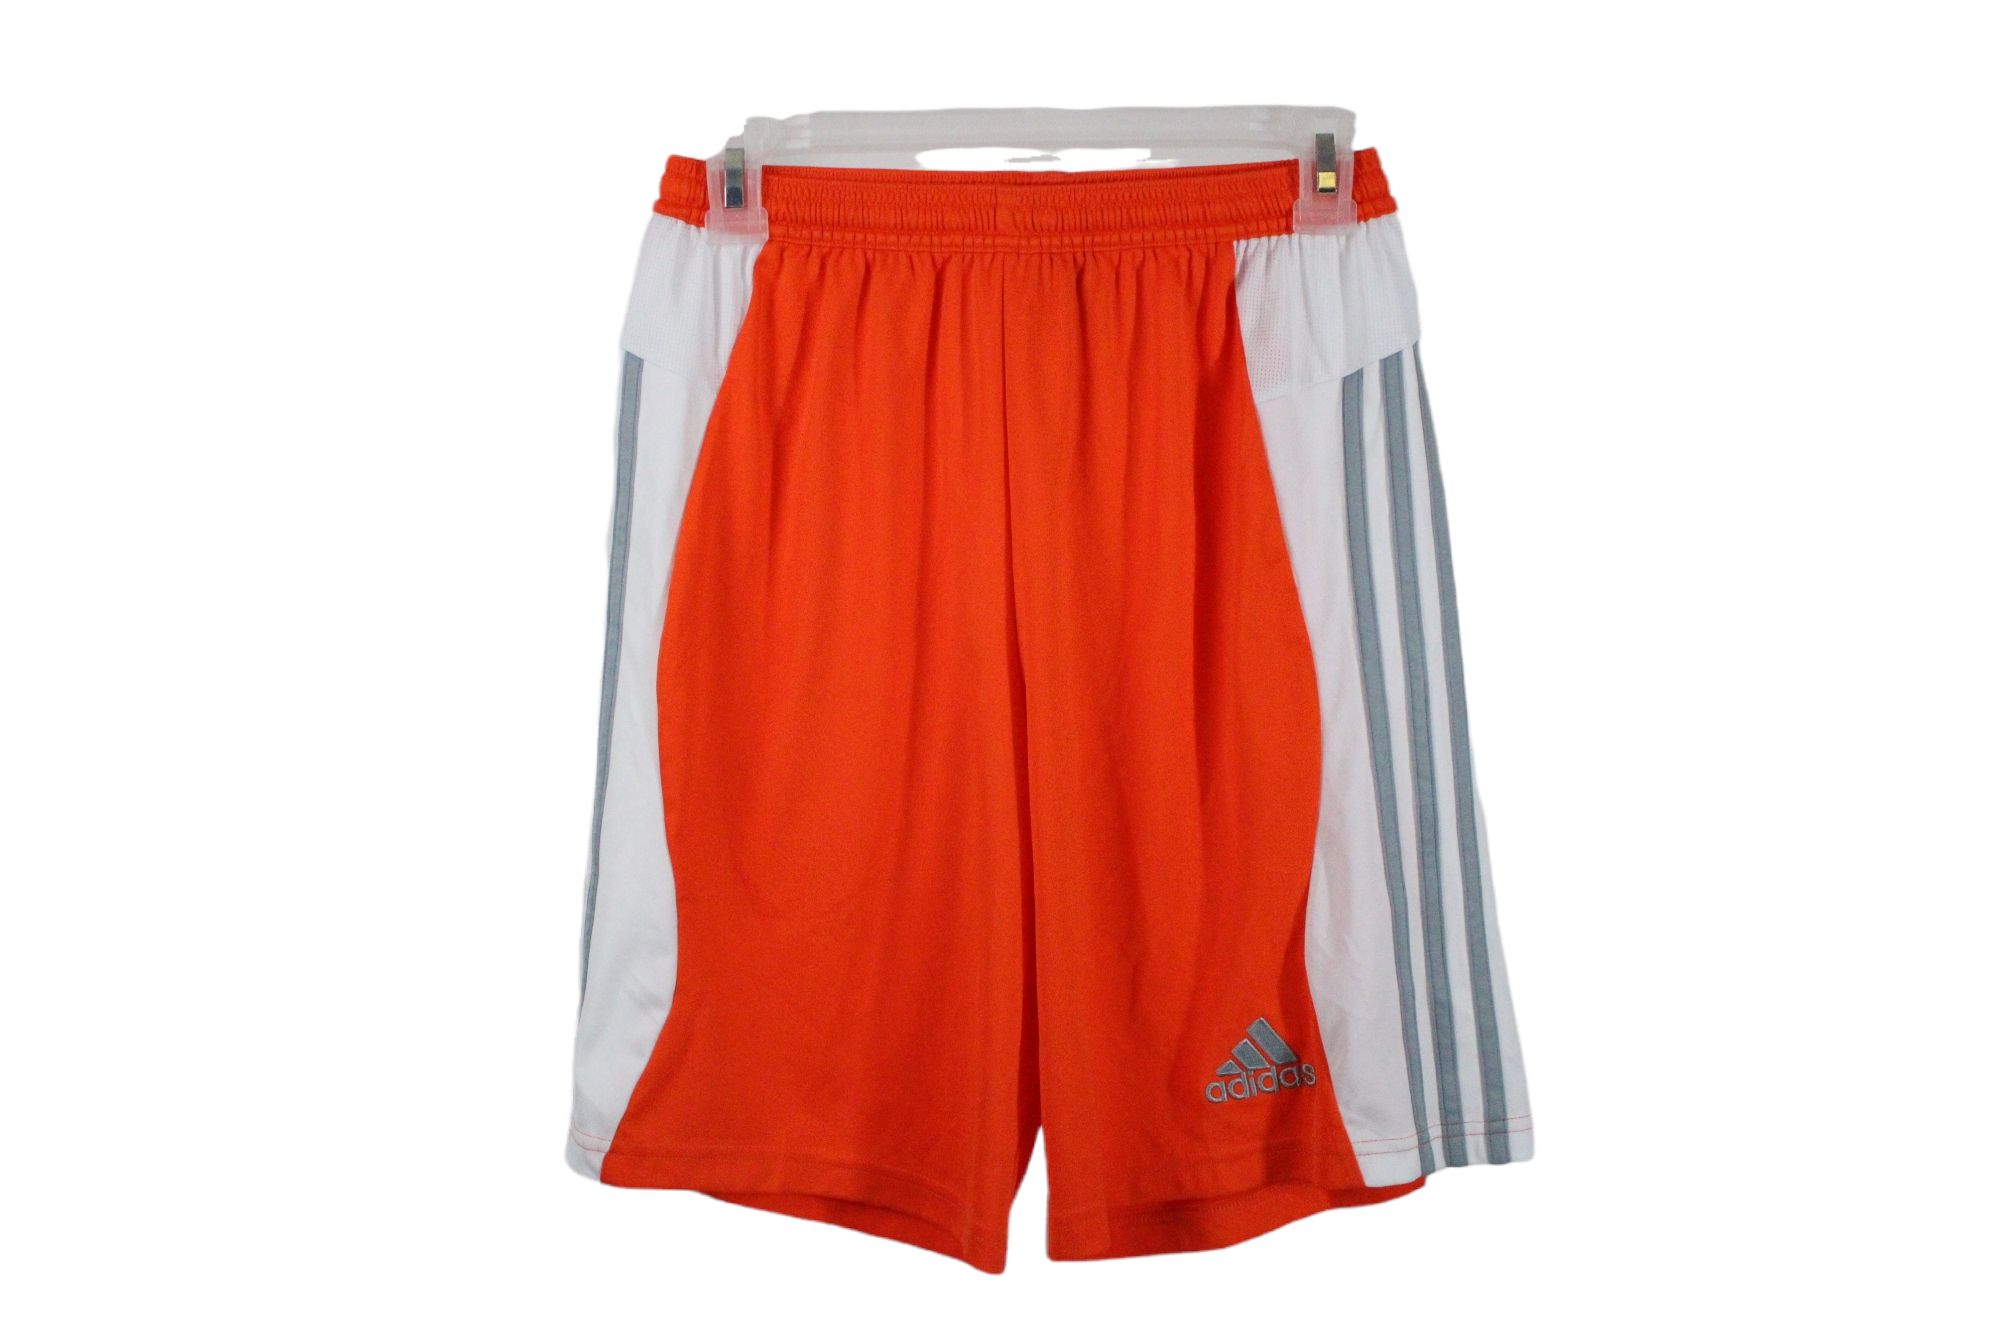 Adidas Climalite Orange Short | Youth XL (18/20)